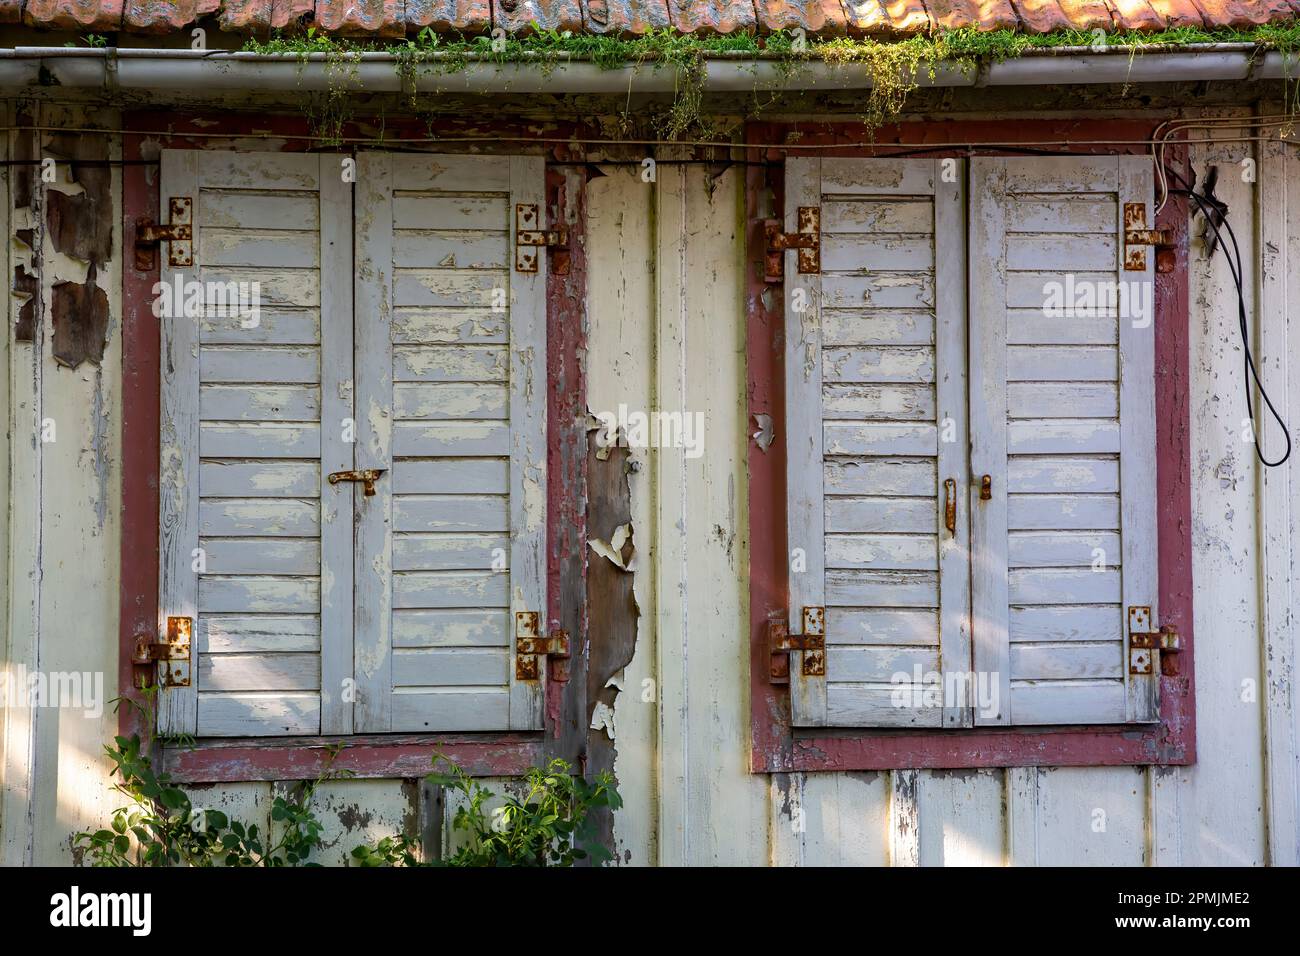 Vieux temps fermé volets en bois dans une maison abandonnée Banque D'Images